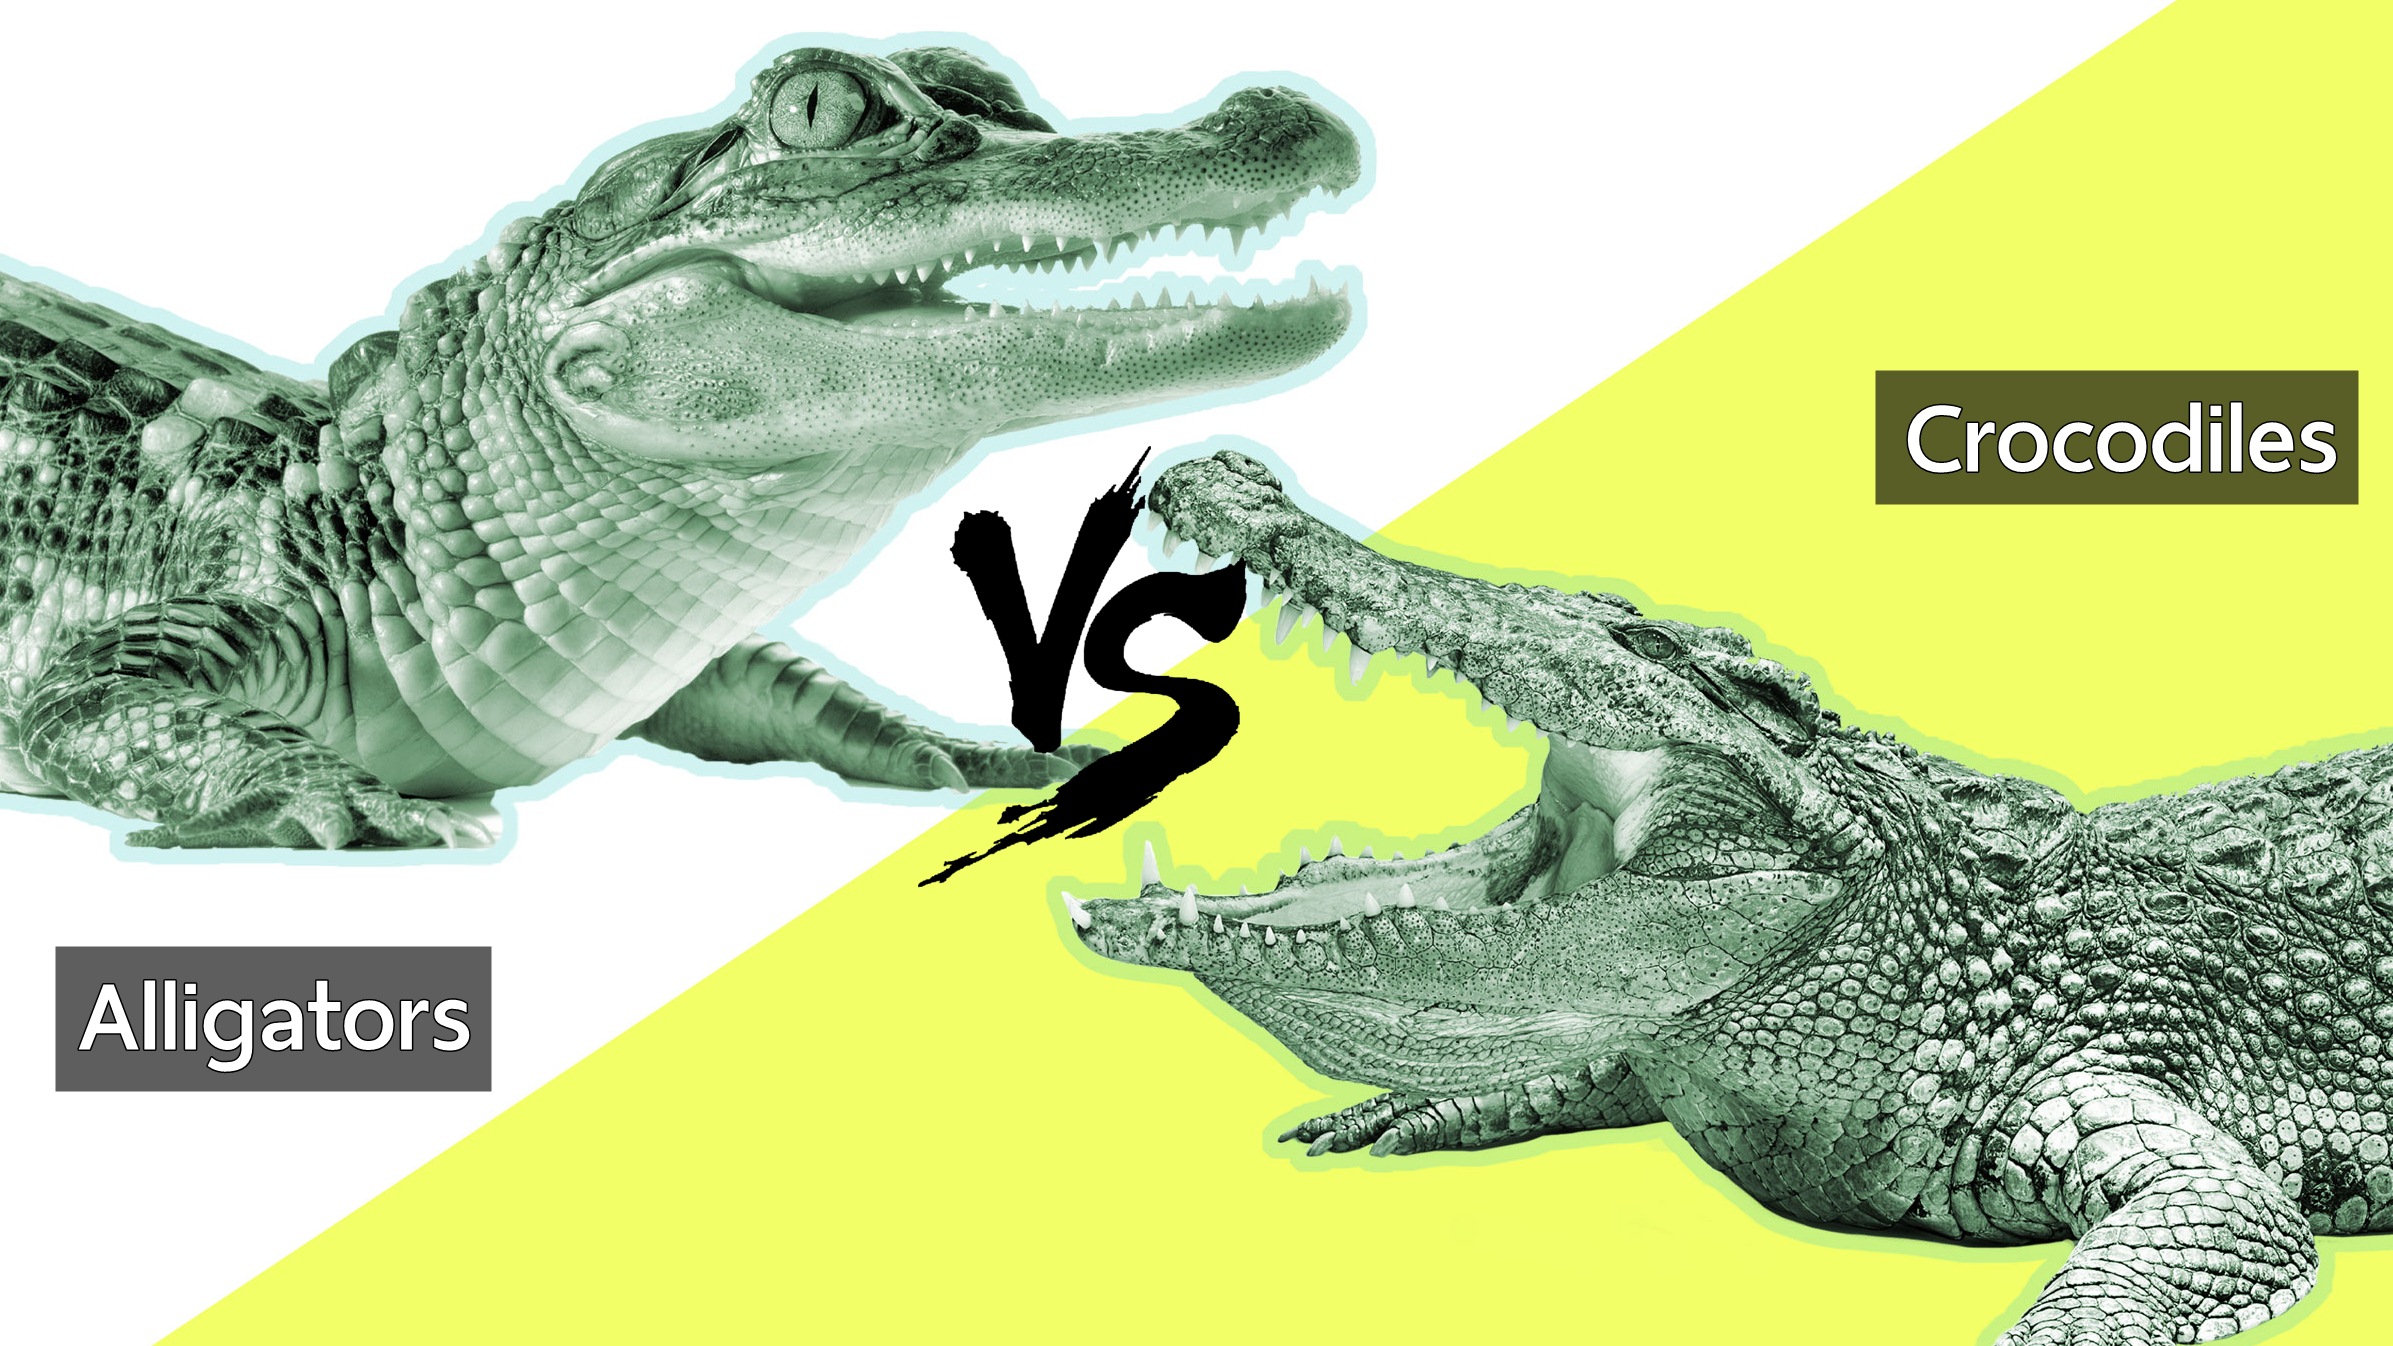 ไปดูความแตกต่างระหว่าง Crocodile และ Alligator ถึงจะเป็นไอ่เข้ แต่ก็ไม่เหมือนกันนะ!!